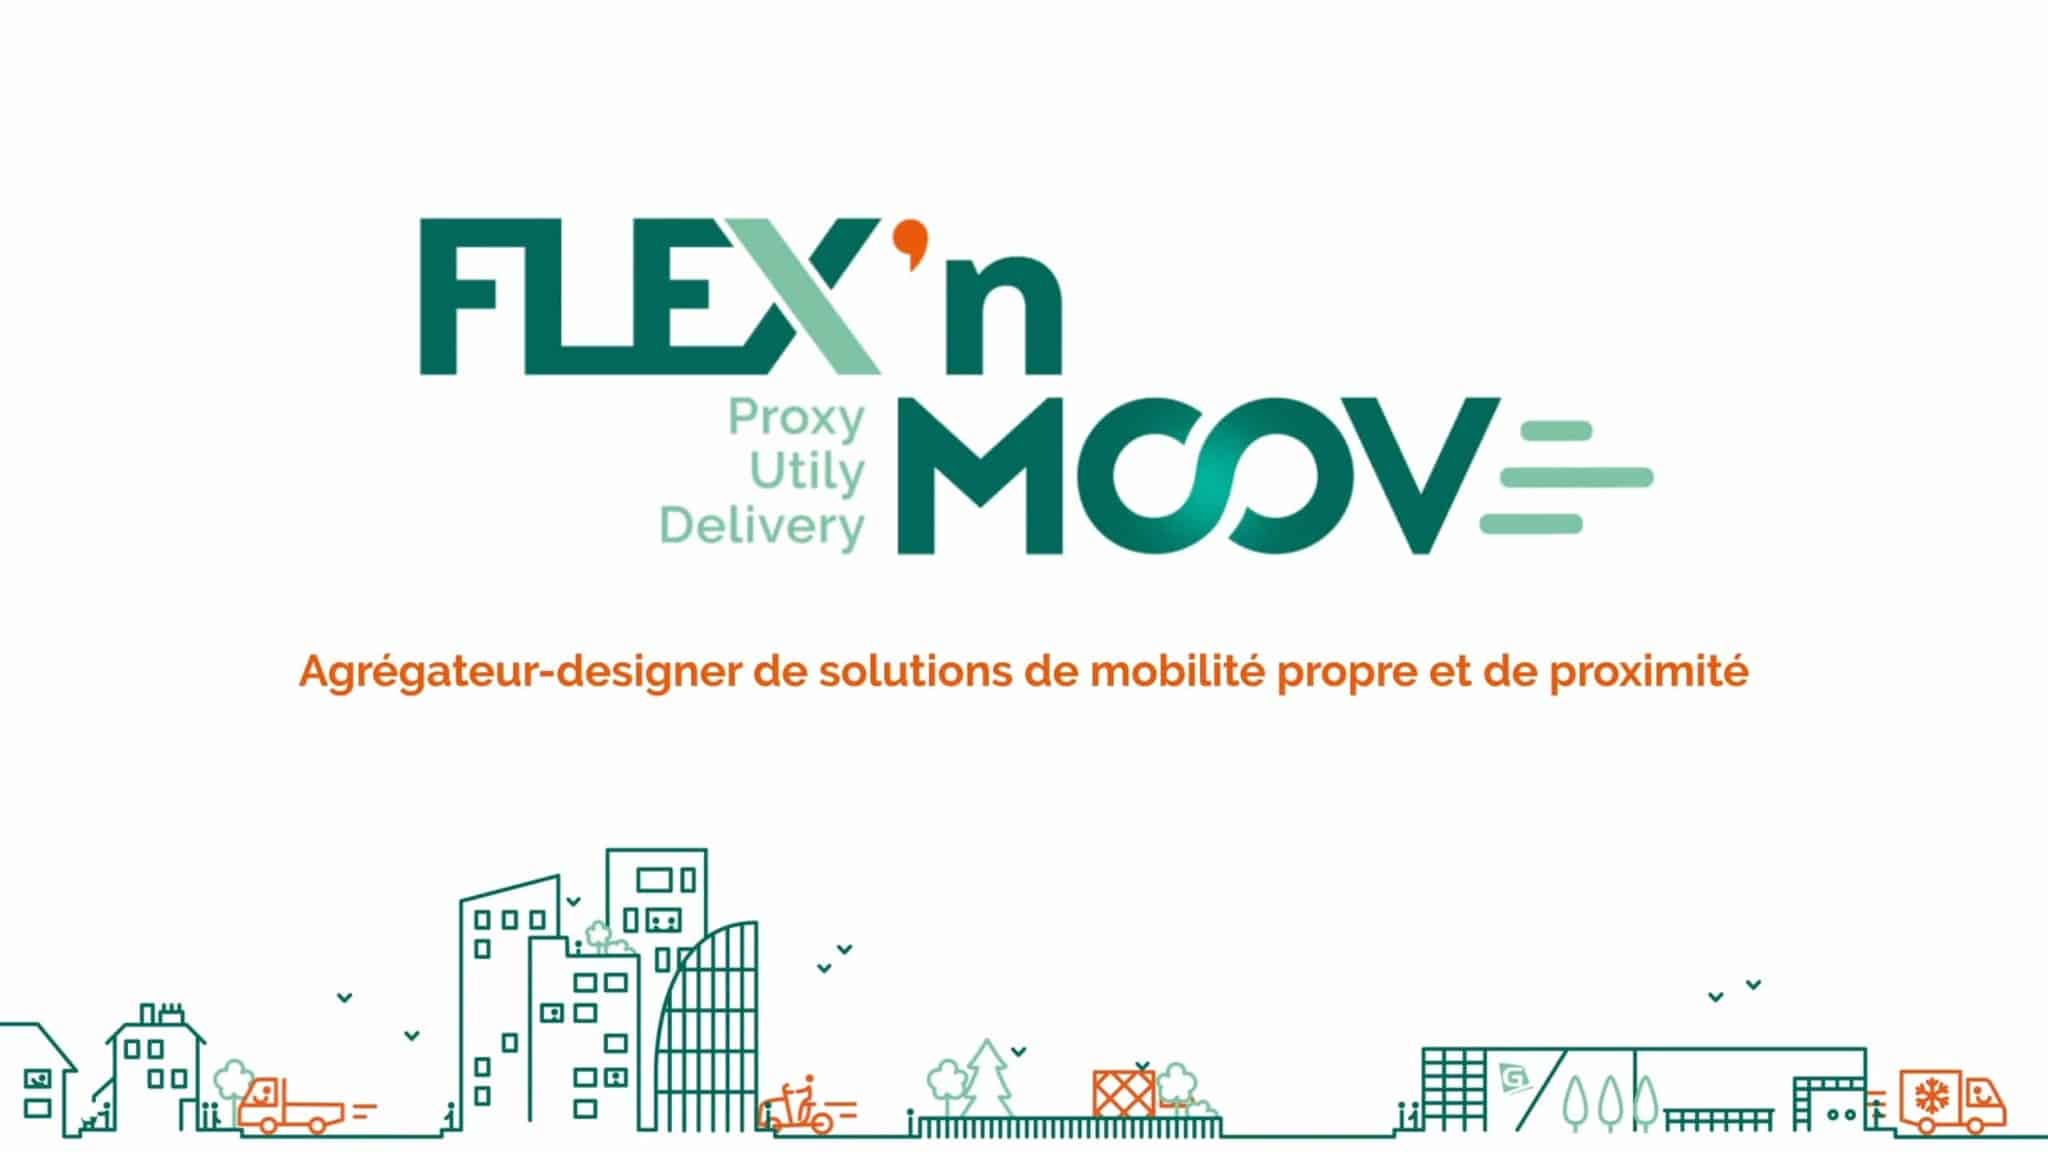 Flex’n moov : en faveur d’une mobilité « propre et de proximité »